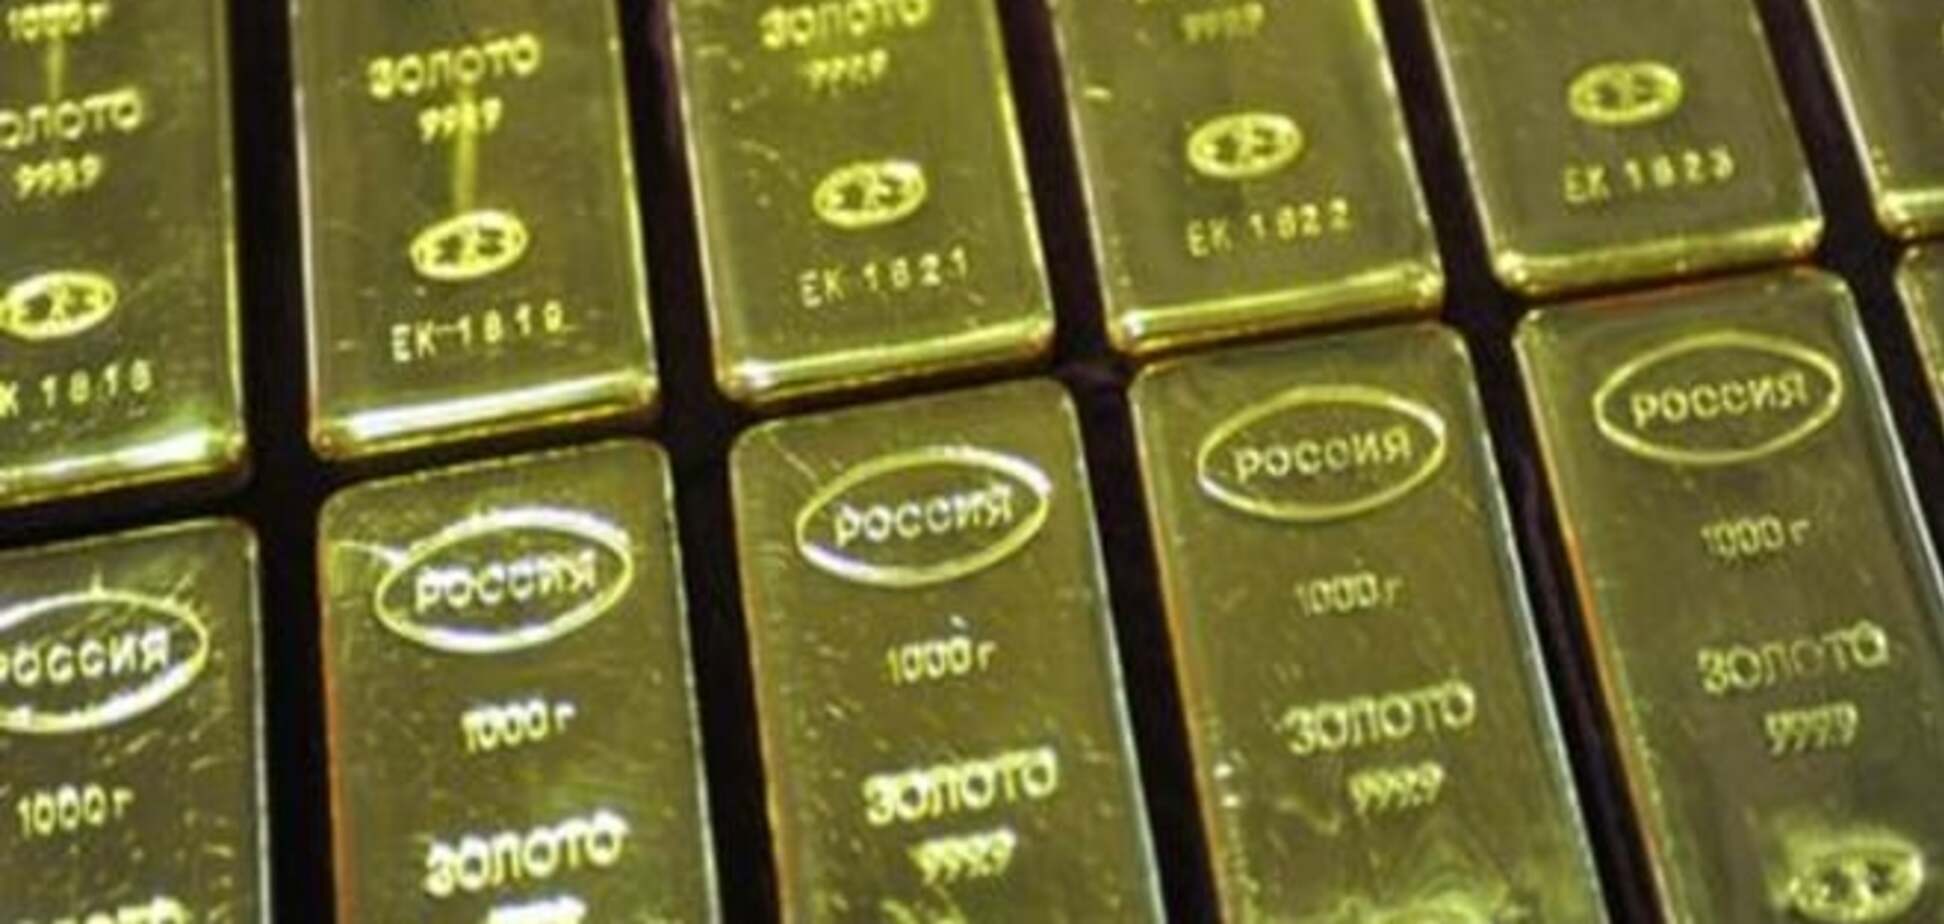 Золотые запасы России: о стратегической ошибке пока говорить рано